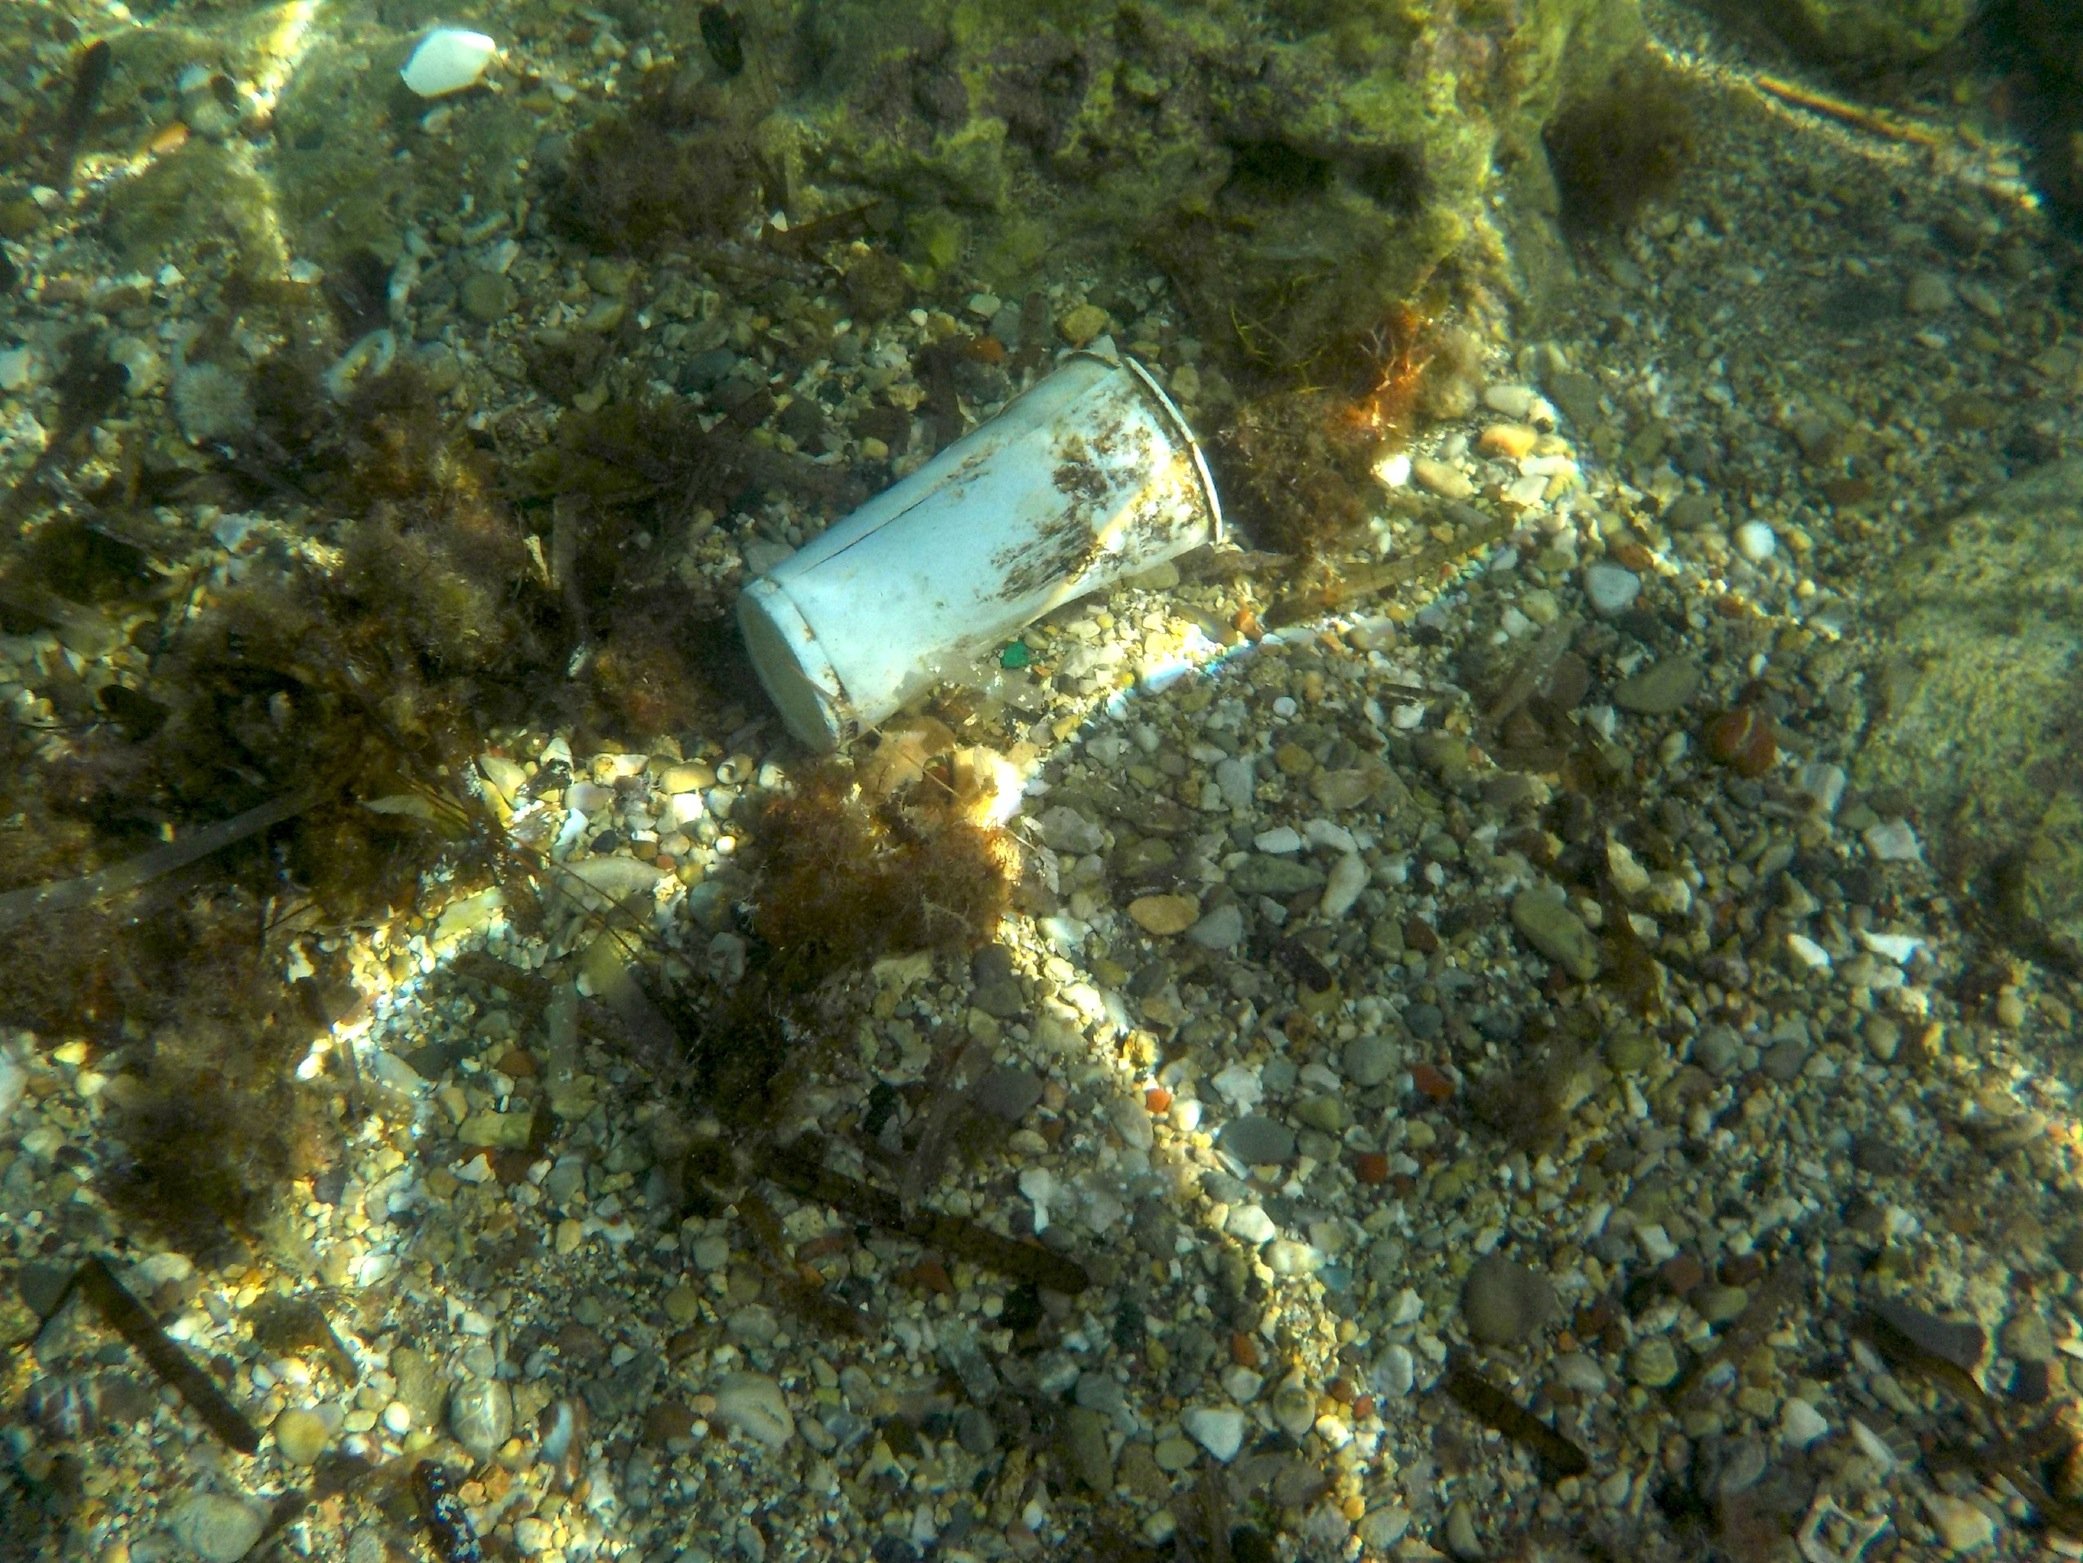 Trinkbecher am Strand von Rhodos: Müll im Meer ist ein weltweites Problem.